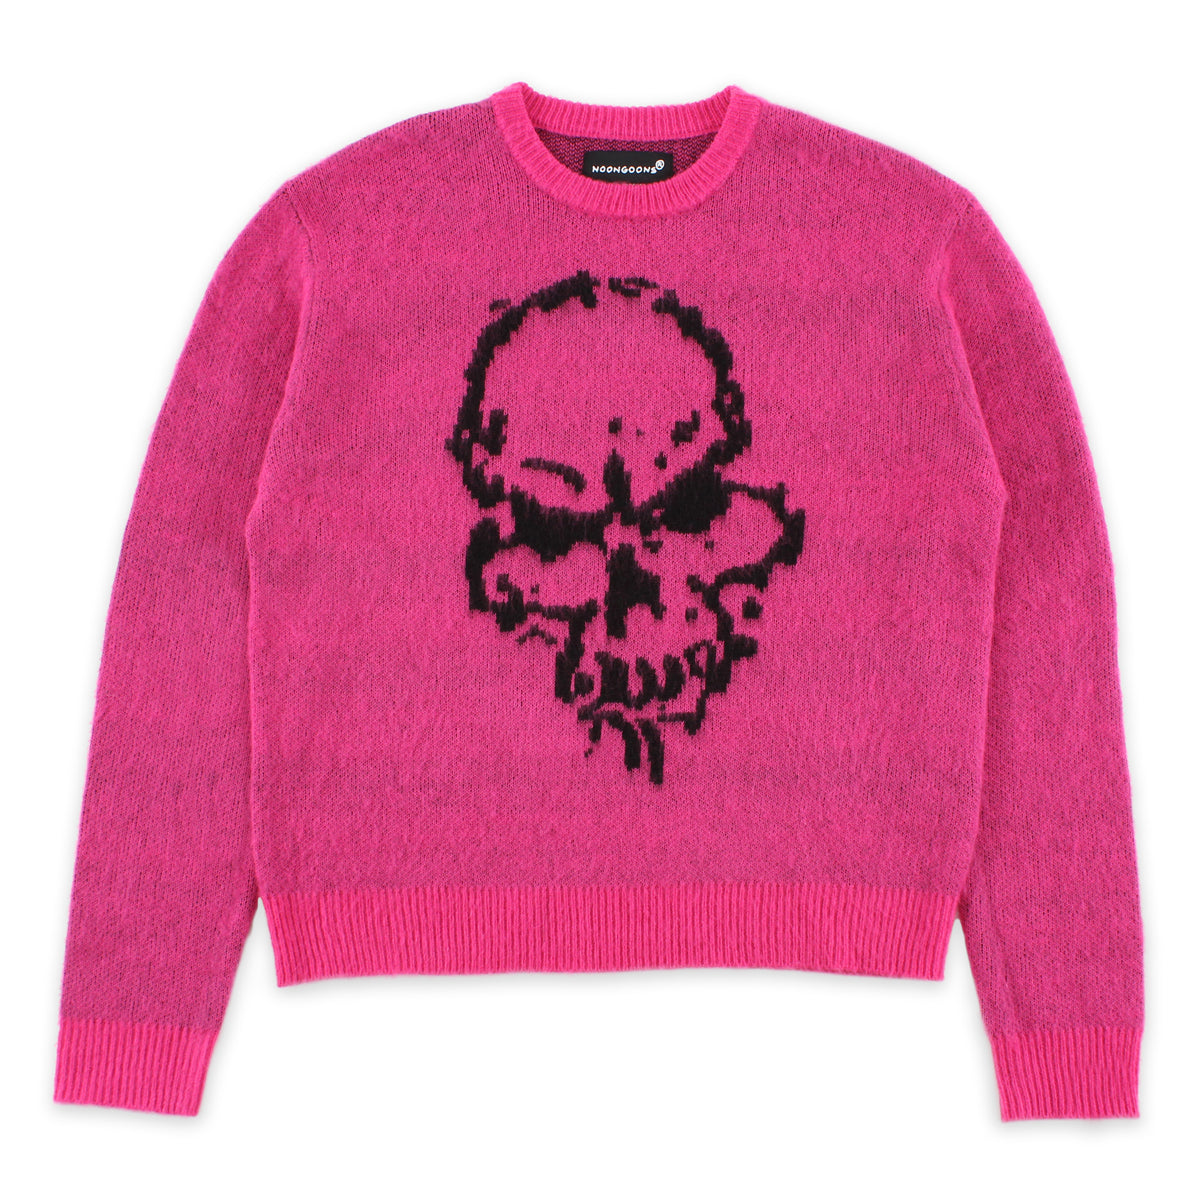 Gatekeeper Sweater - Pink